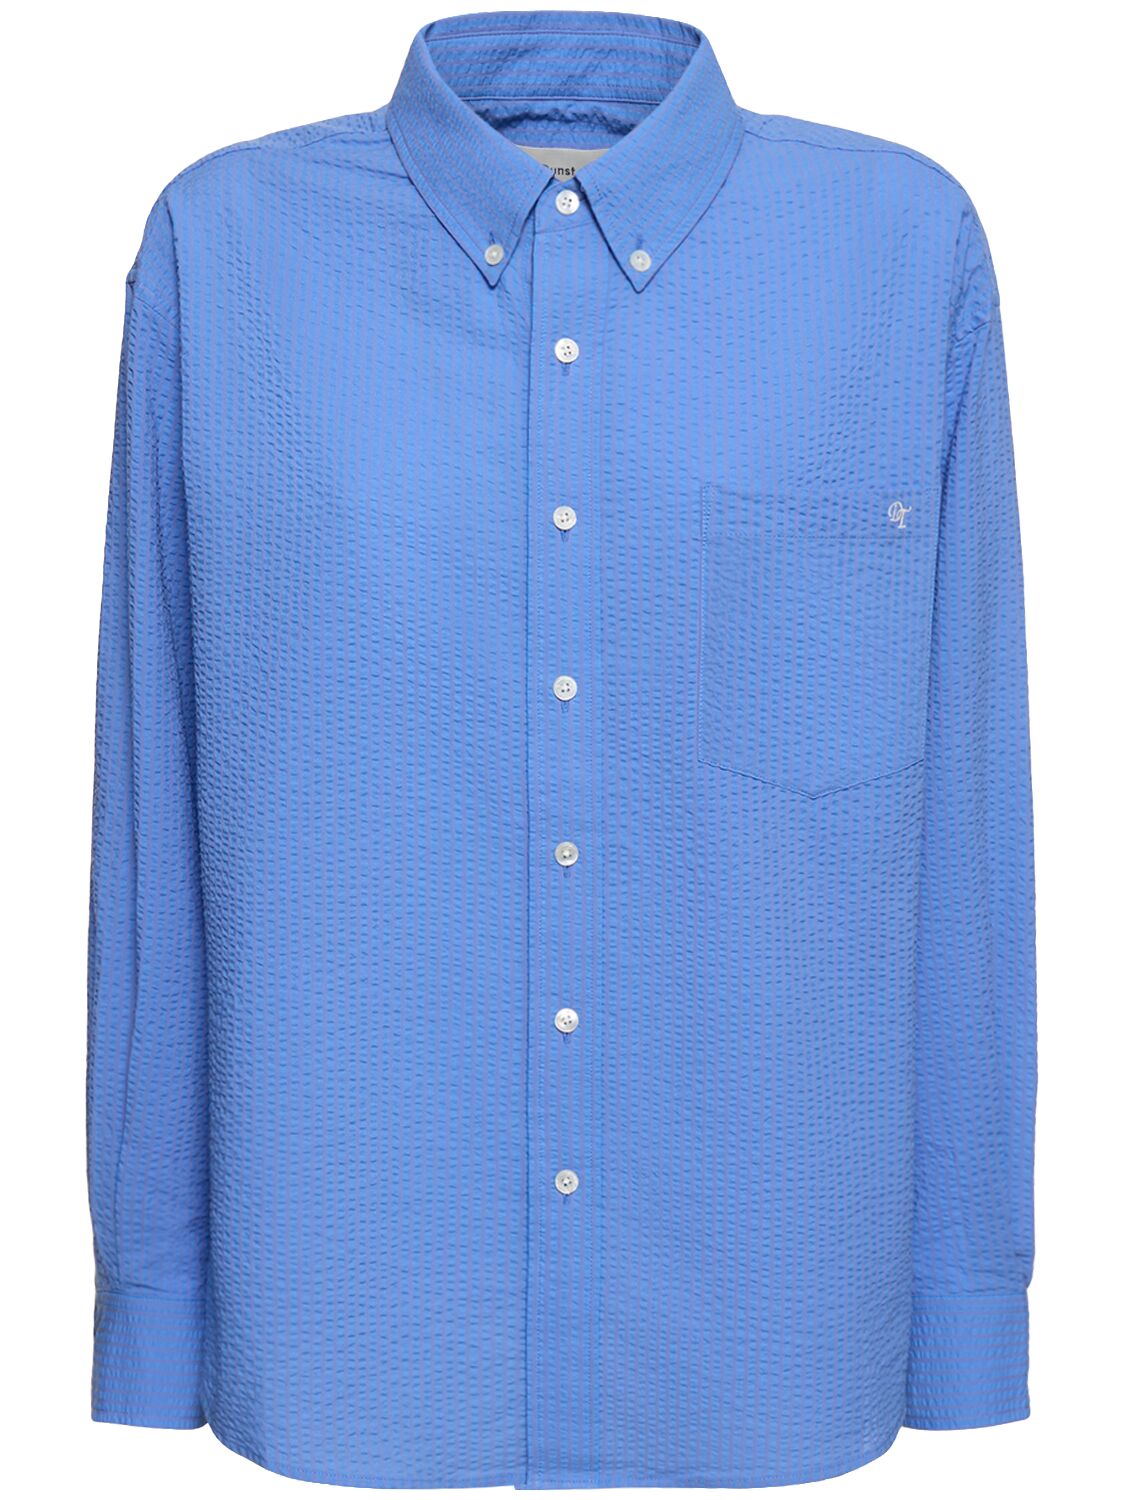 Image of Classic Cotton Seersucker Shirt